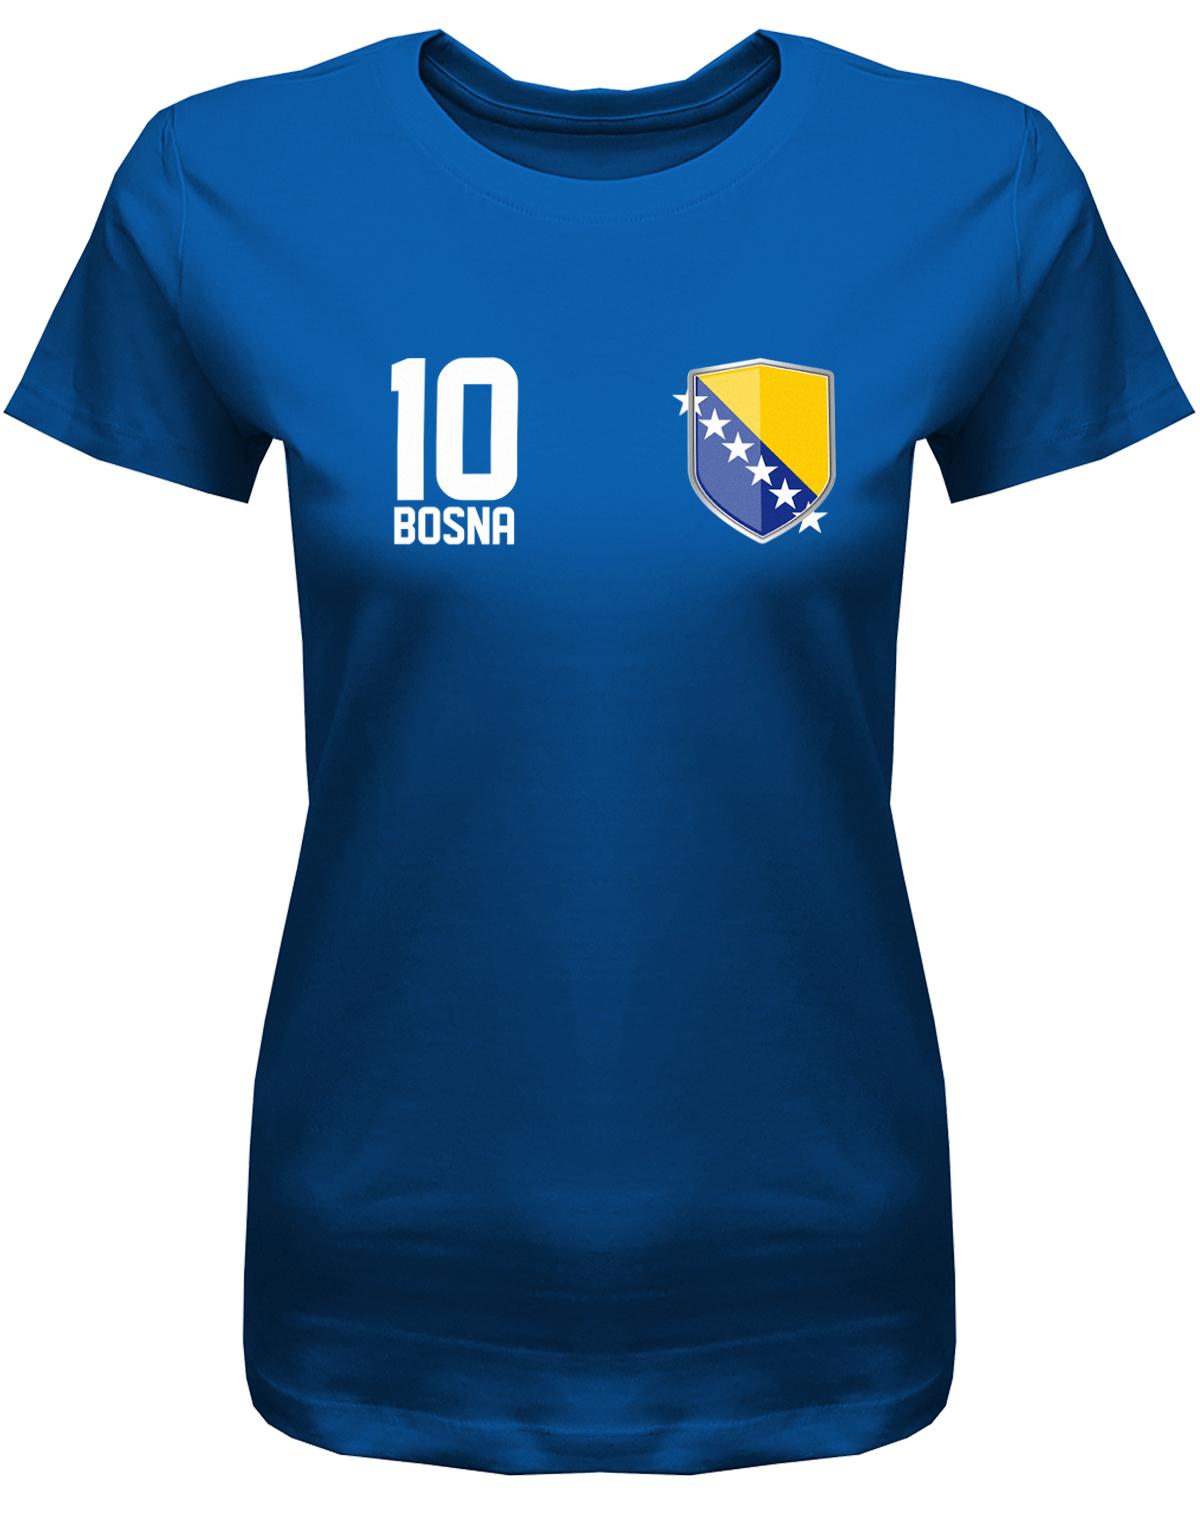 Bosna-Shirt-10-DamenEM-Wm-Shirt-Royalblau